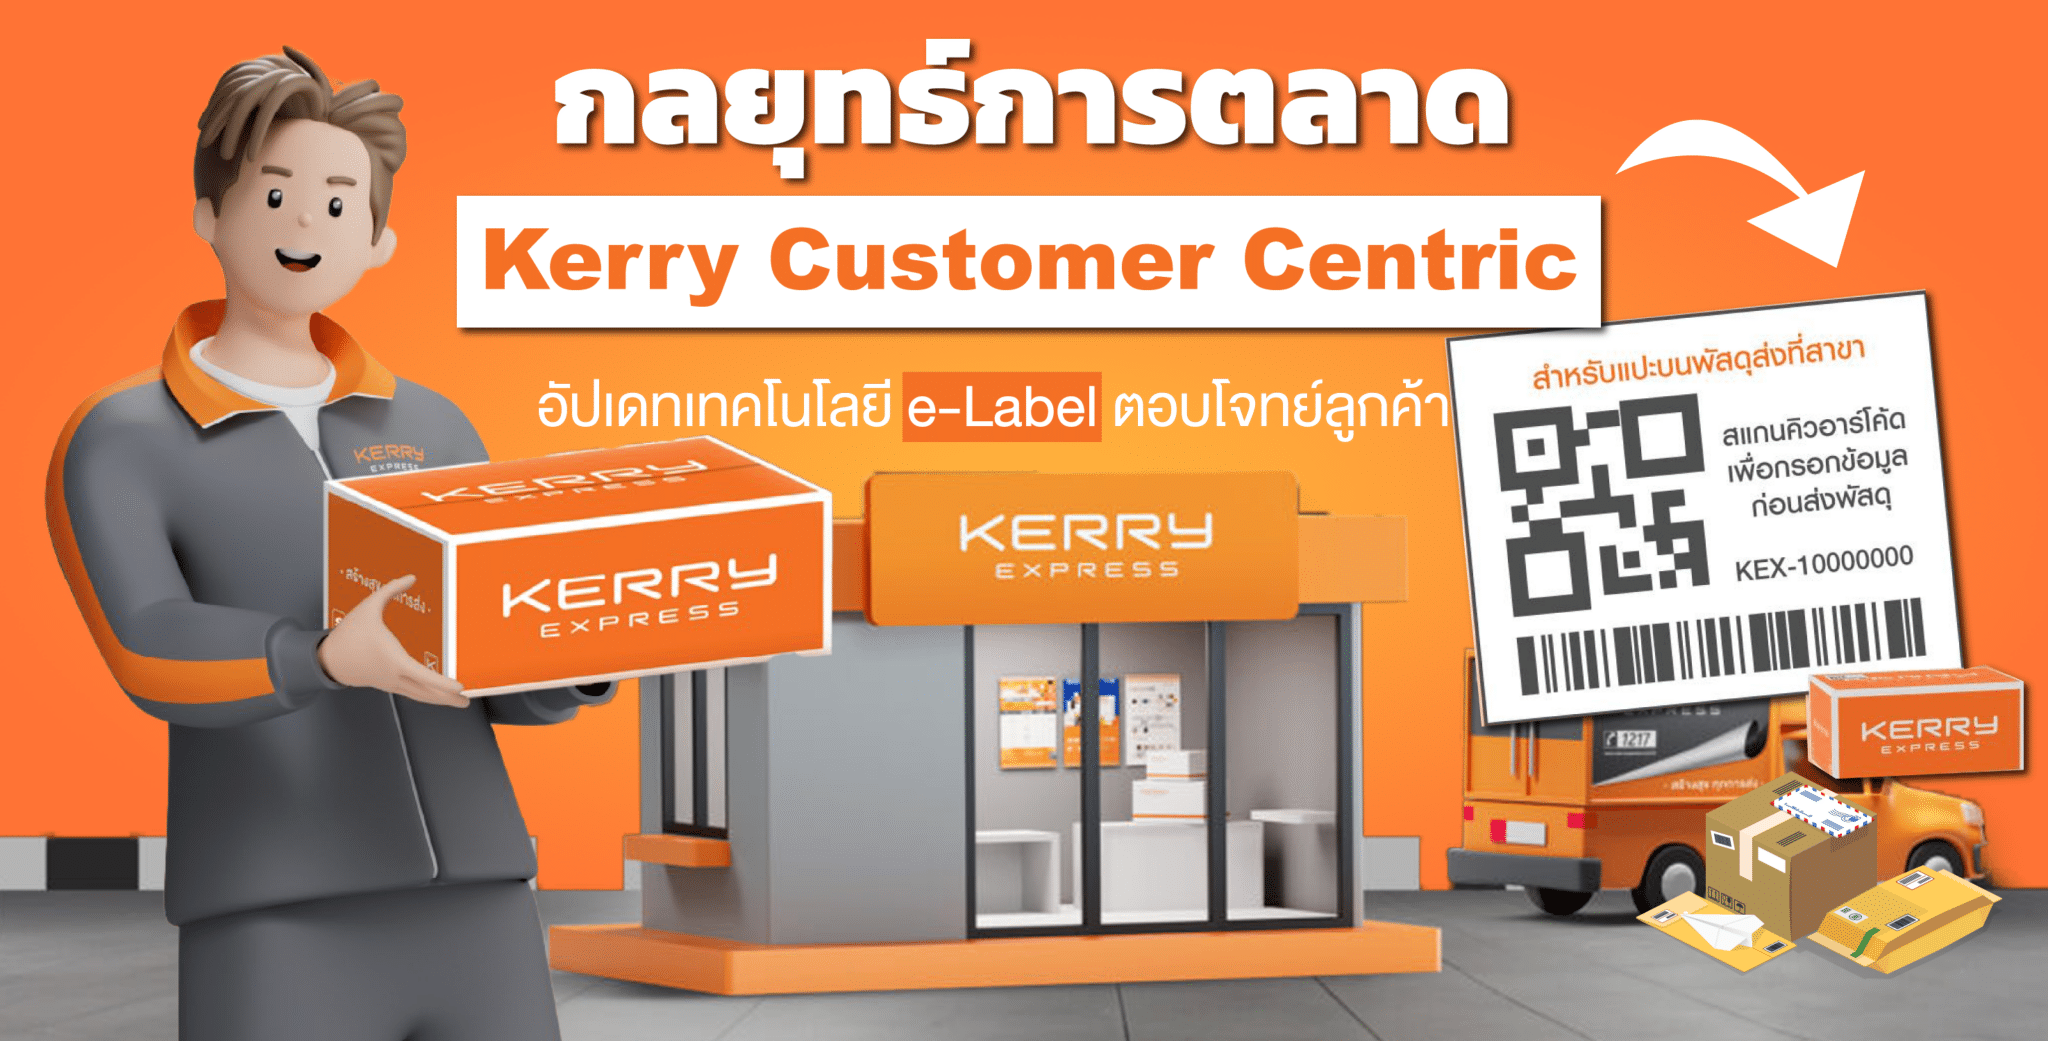 กลยุทธ์การตลาด Kerry Customer Centric อัปเดทเทคโนโลยี e-Label ตอบโจทย์ลูกค้า